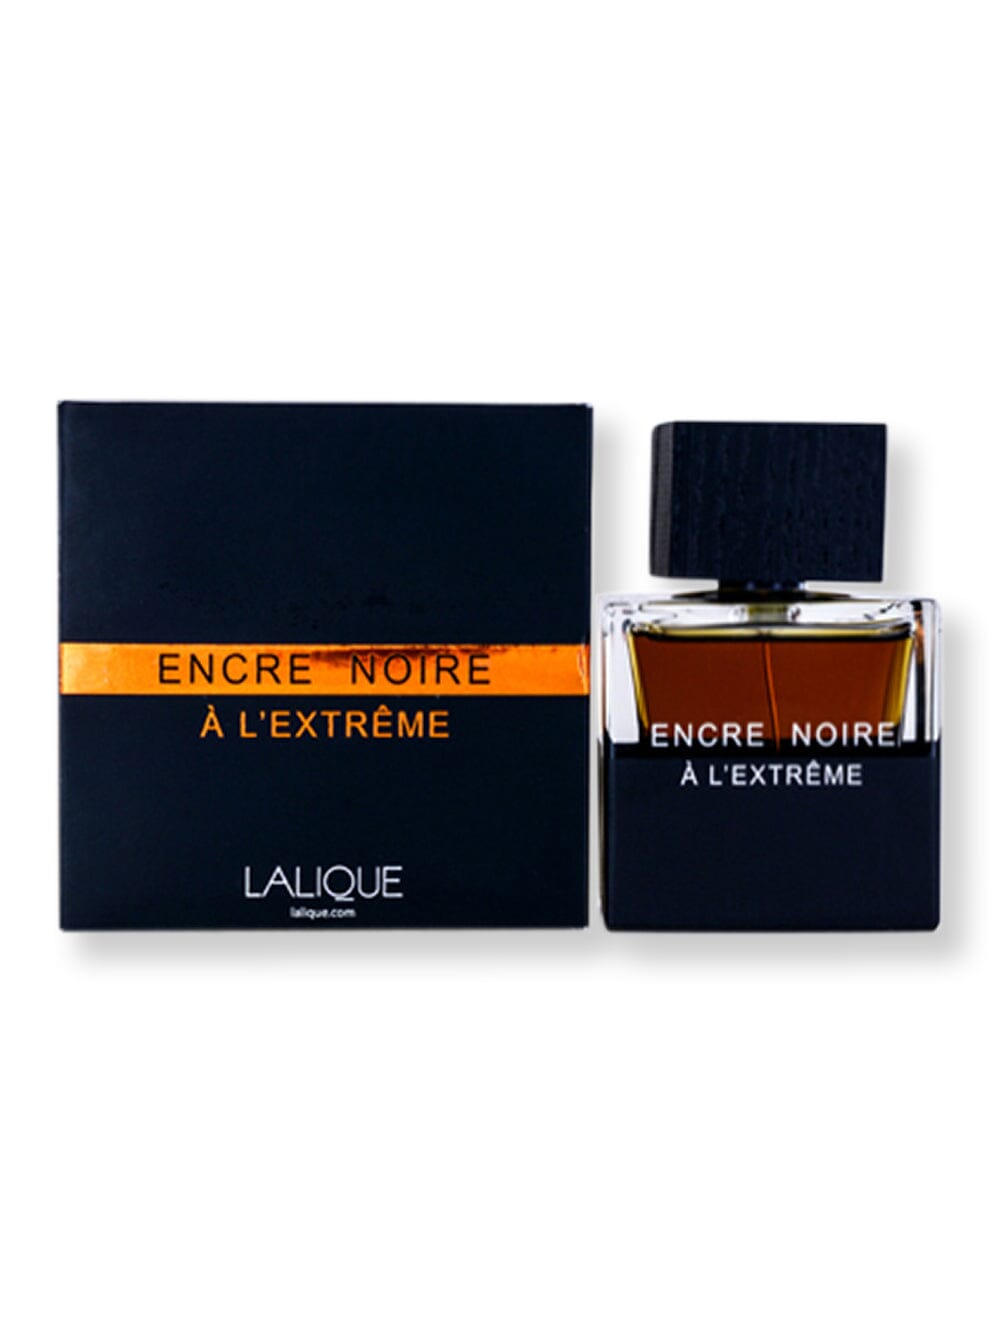 Lalique Lalique Encre Noire A L'extreme EDP Spray 3.3 oz100 ml Perfume 